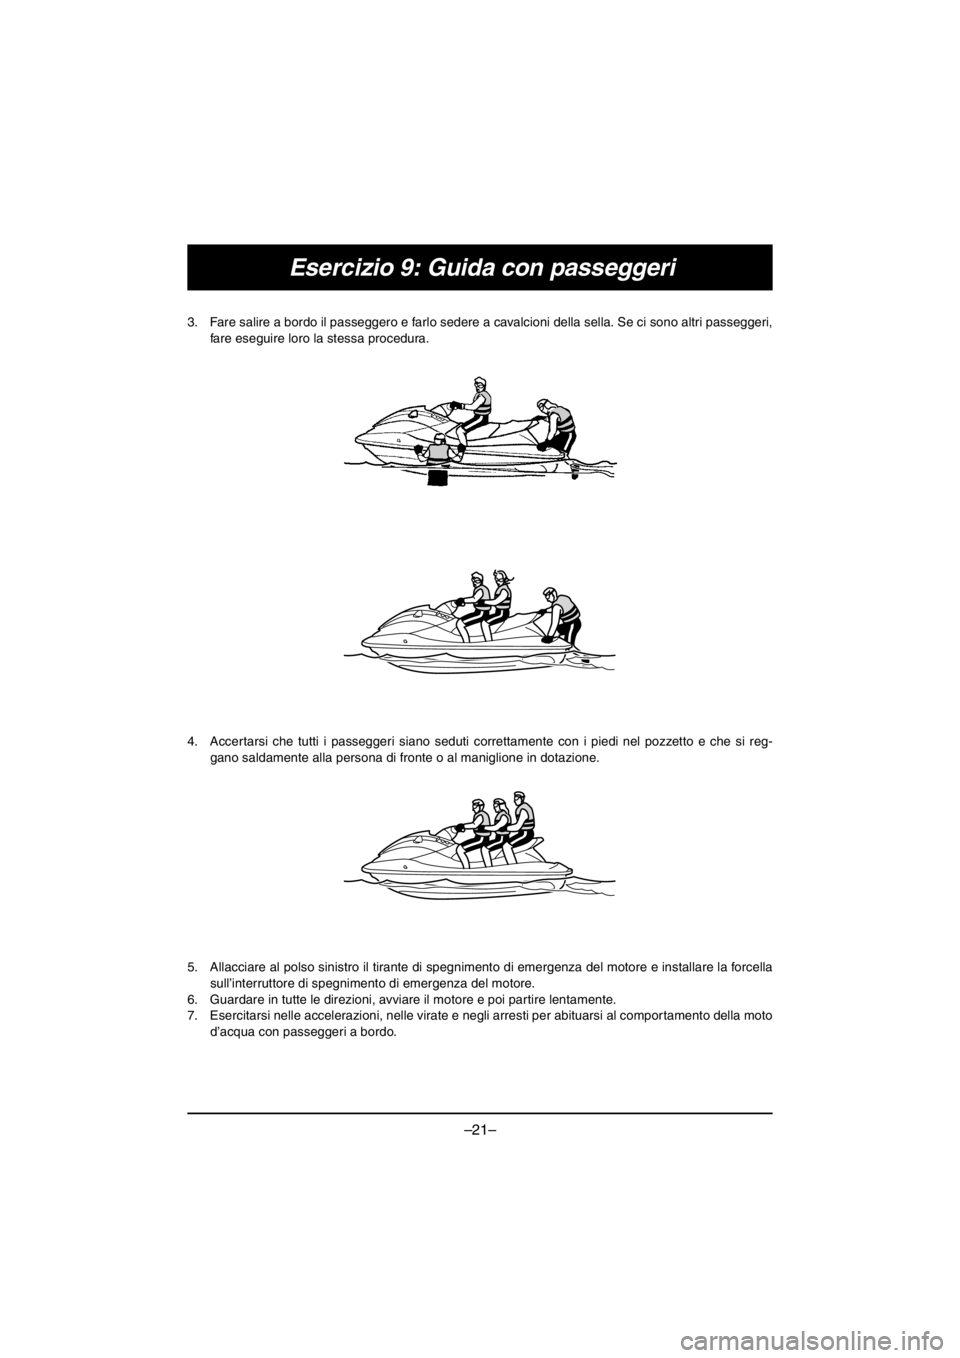 YAMAHA V1 2016  Notices Demploi (in French) –21–
Esercizio 9: Guida con passeggeri
3. Fare salire a bordo il passeggero e farlo sedere a cavalcioni della sella. Se ci sono altri passeggeri,
fare eseguire loro la stessa procedura. 
4. Accert